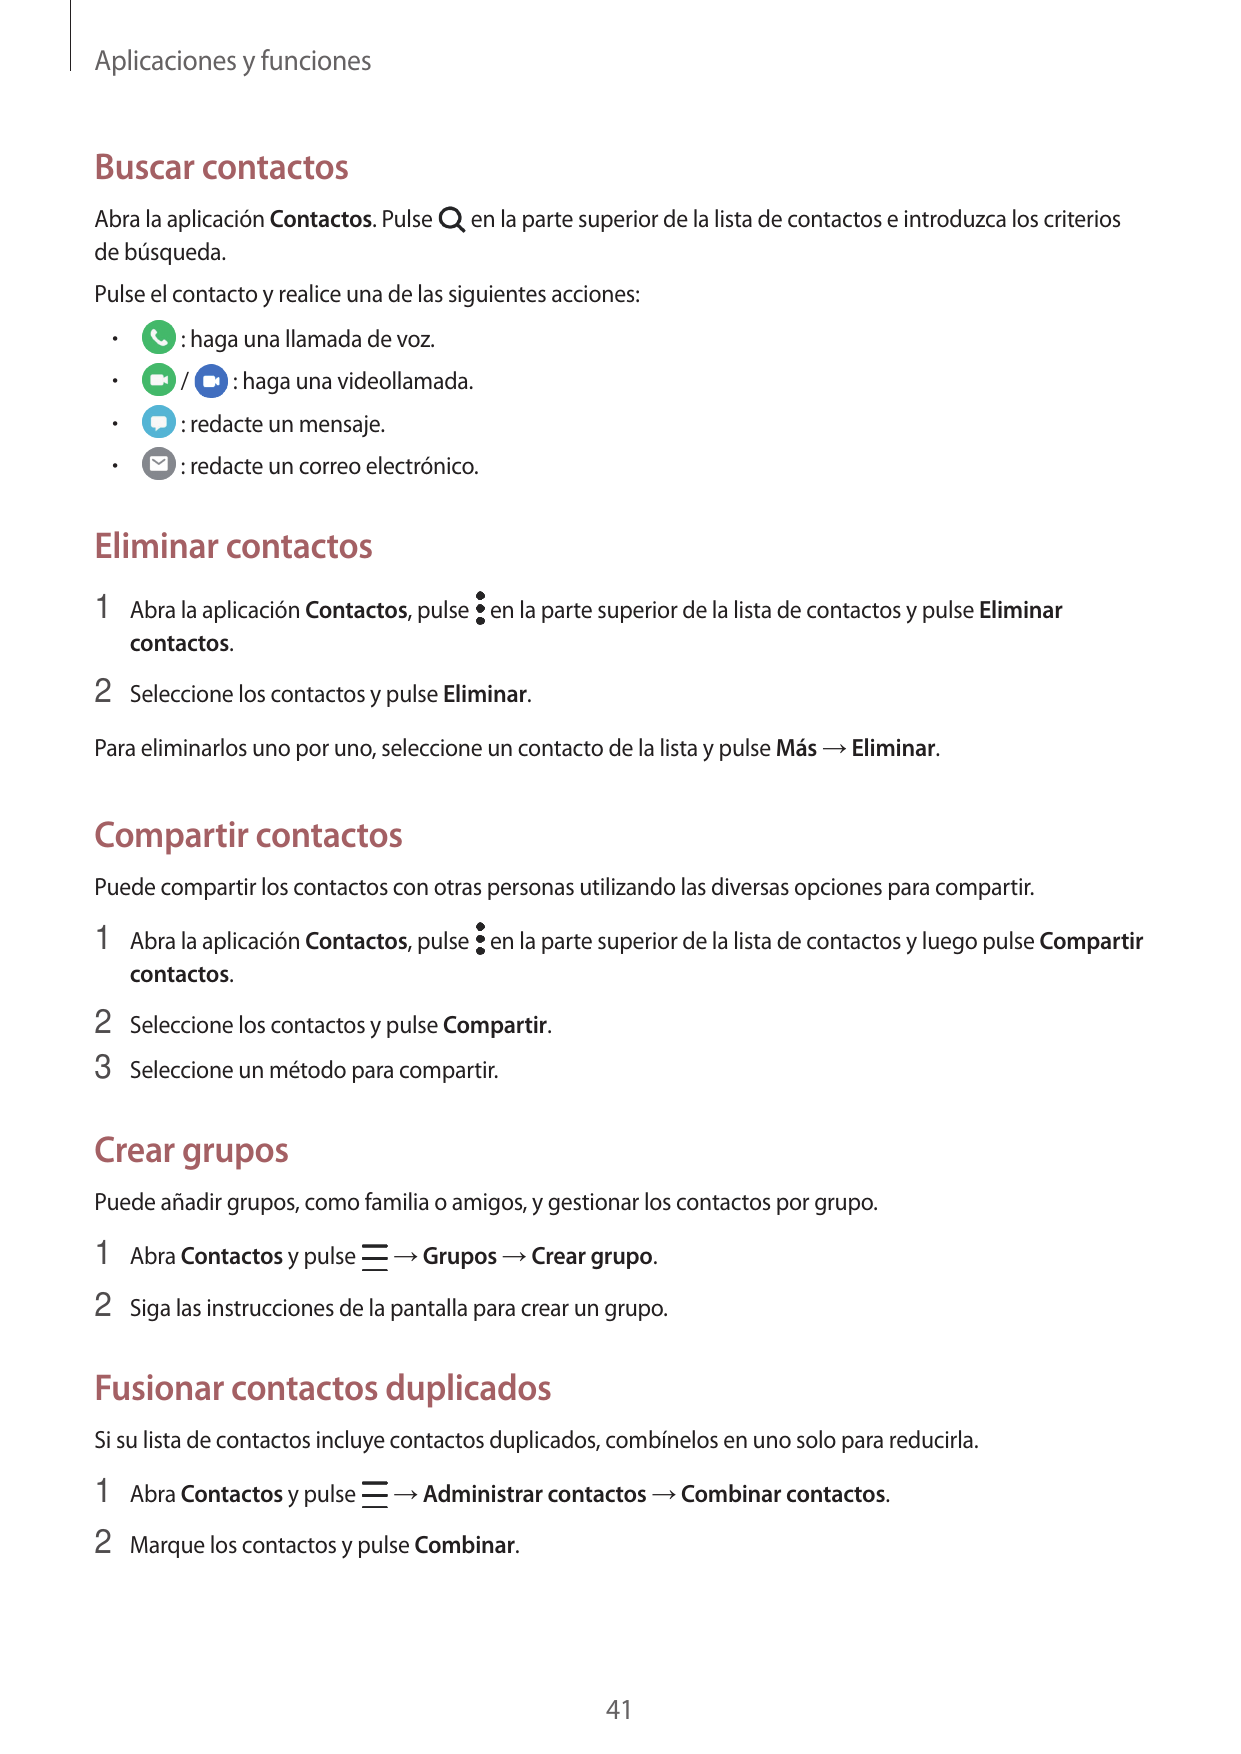 Aplicaciones y funcionesBuscar contactosAbra la aplicación Contactos. Pulsede búsqueda.en la parte superior de la lista de conta